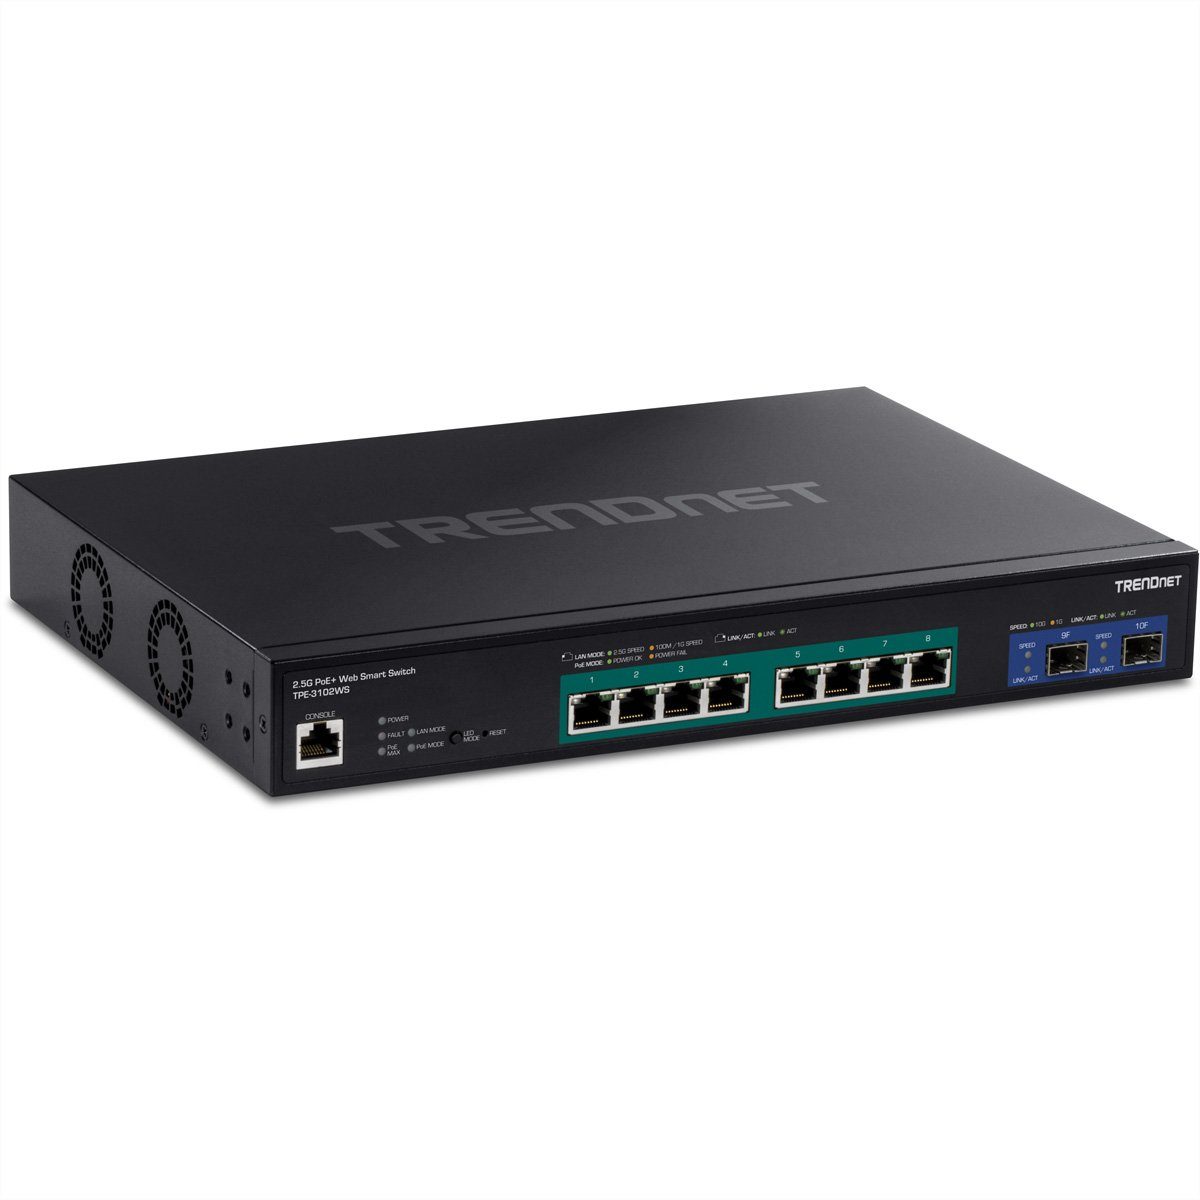 Trendnet TPE-3102WS 10-Port 2.5G Switch Netzwerk-Switch (Web Smart PoE+ mit 10G SFP+ Slots)